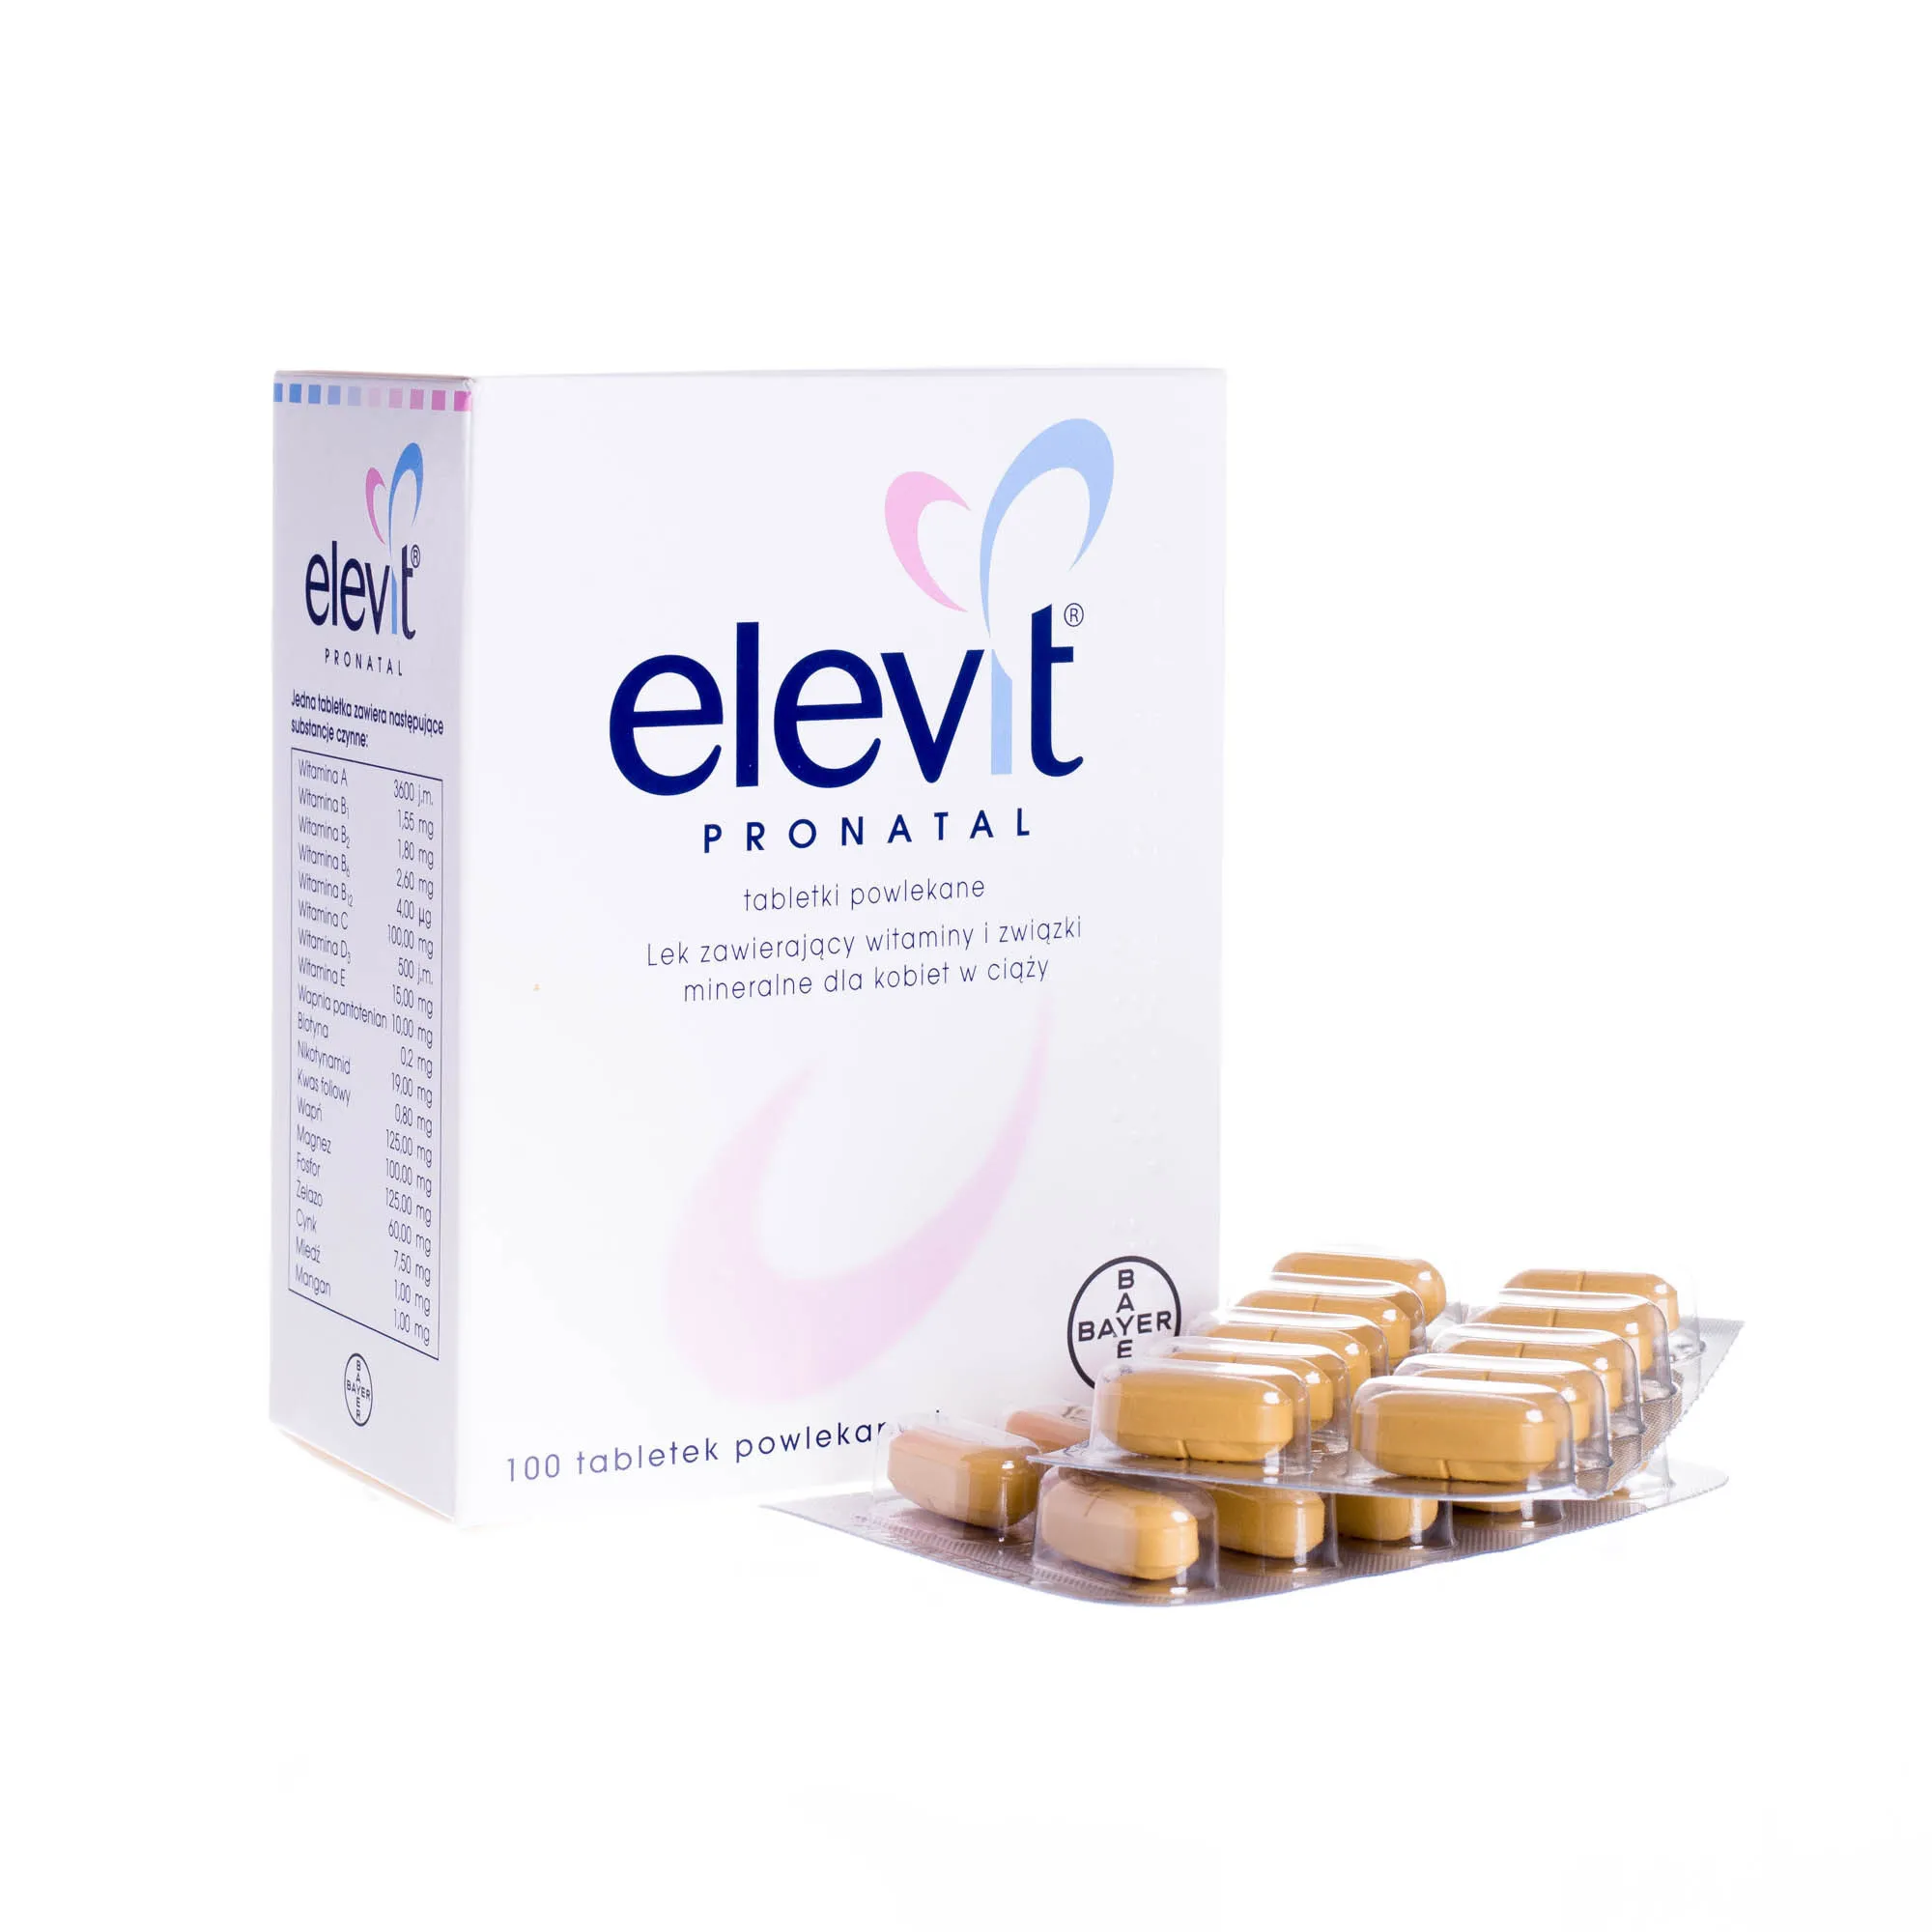 Elevit pronatal, 100 tabletek powlekanych